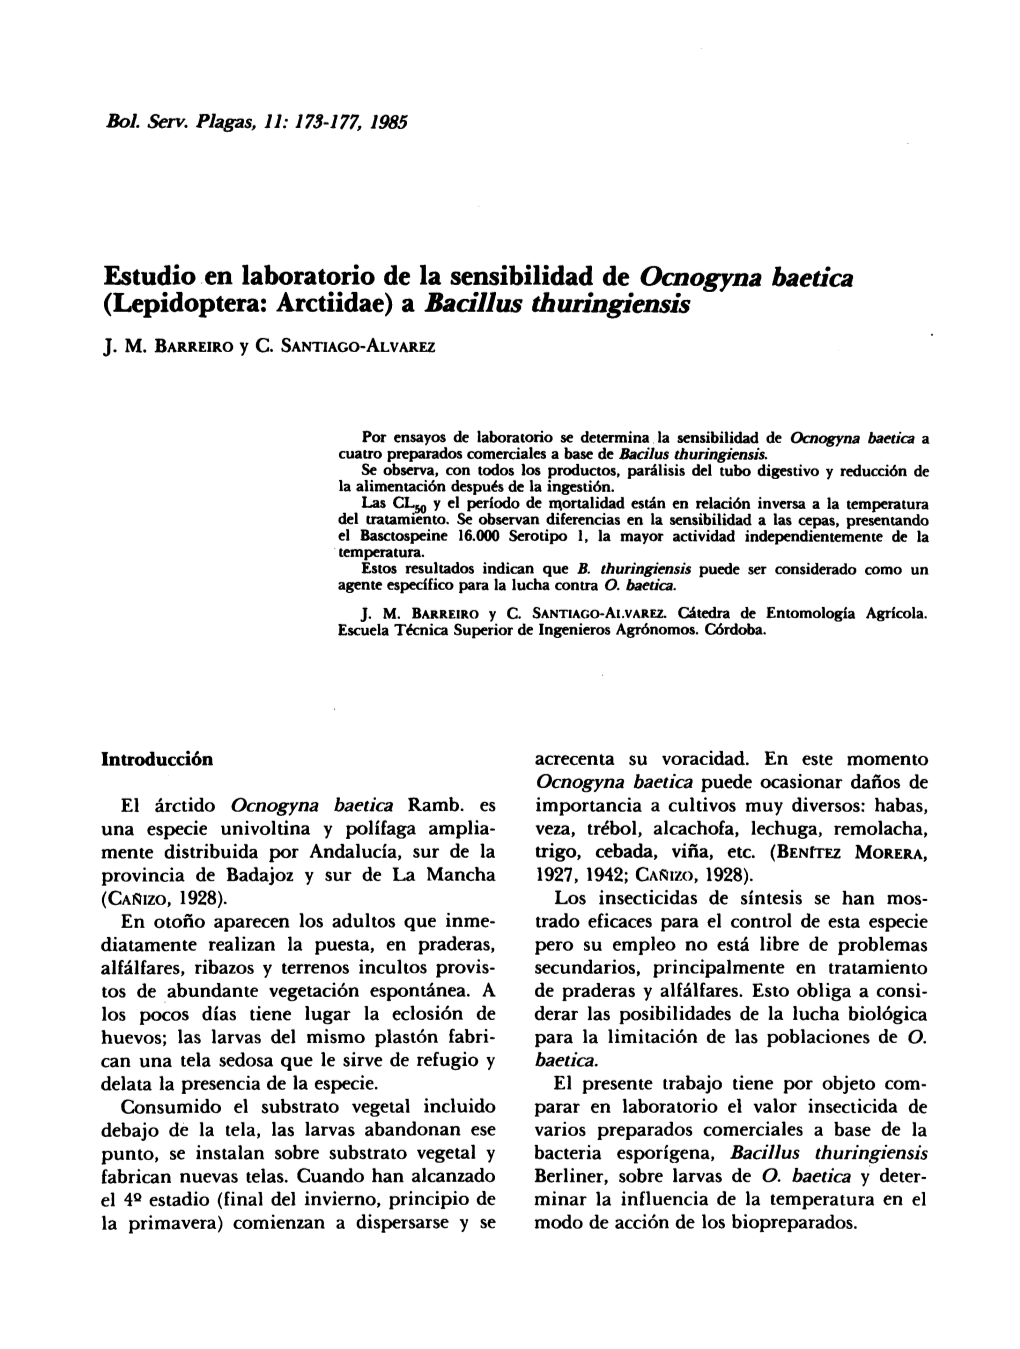 Estudio En Laboratorio De La Sensibilidad De Ocnogyna Baetica (Lepidoptera: Arctiidae) a Bacillus Thuringiensis